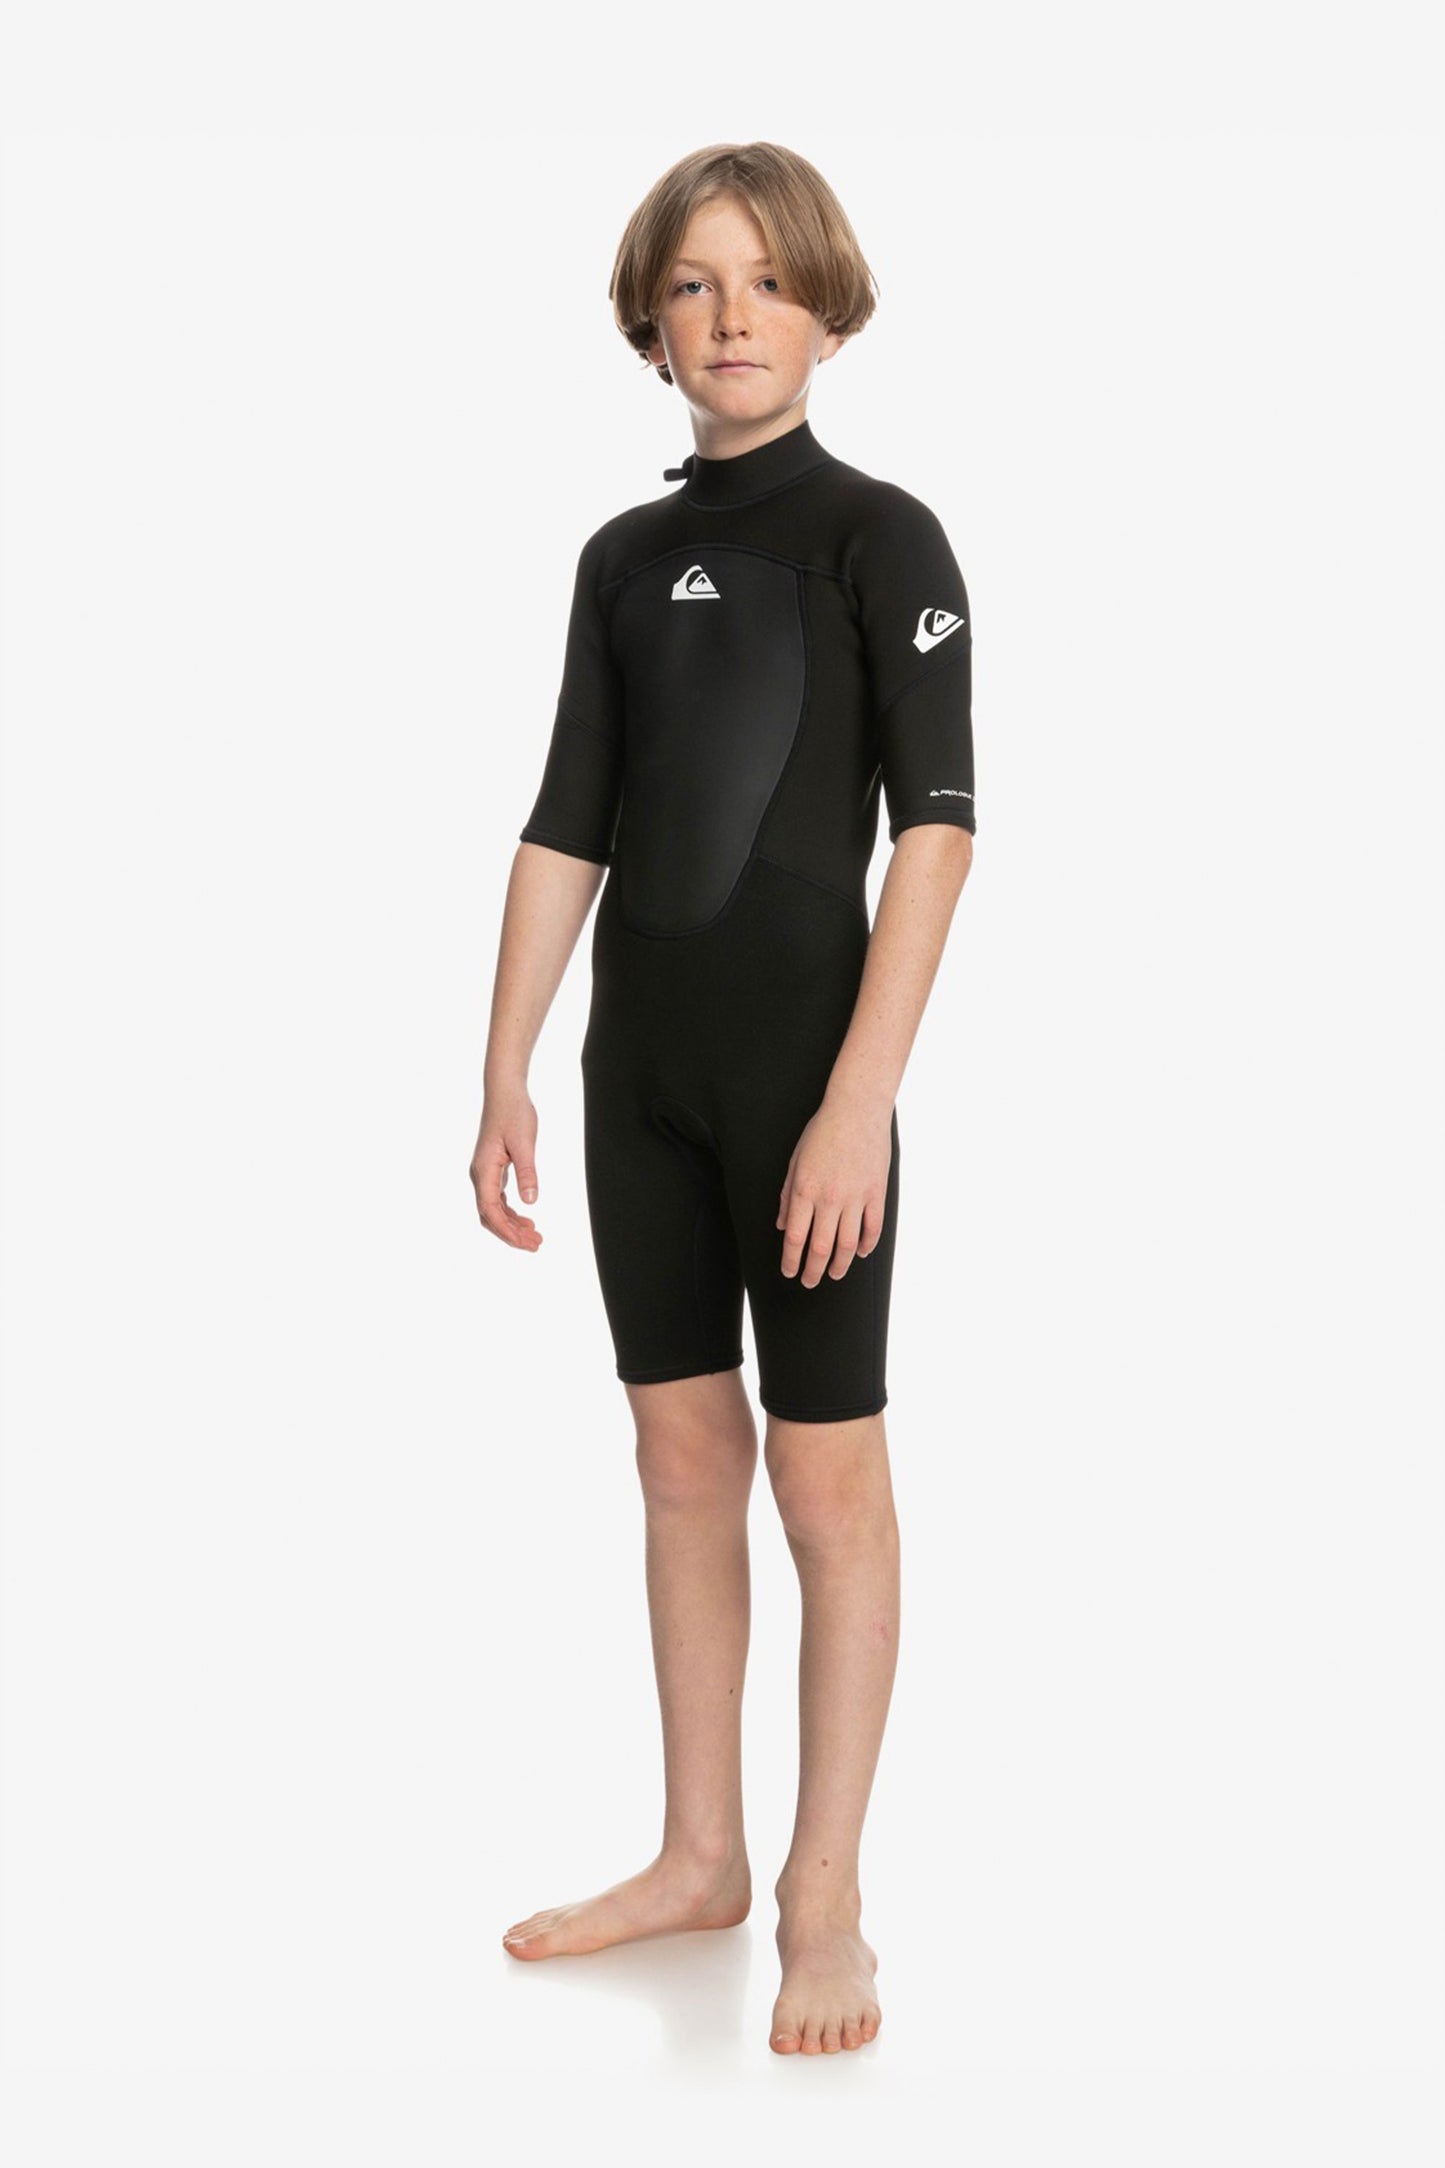 Pukas-Surf-Shop-Quiksilver-Wetsuit-prologue-2-2mm-short-sleeve-black